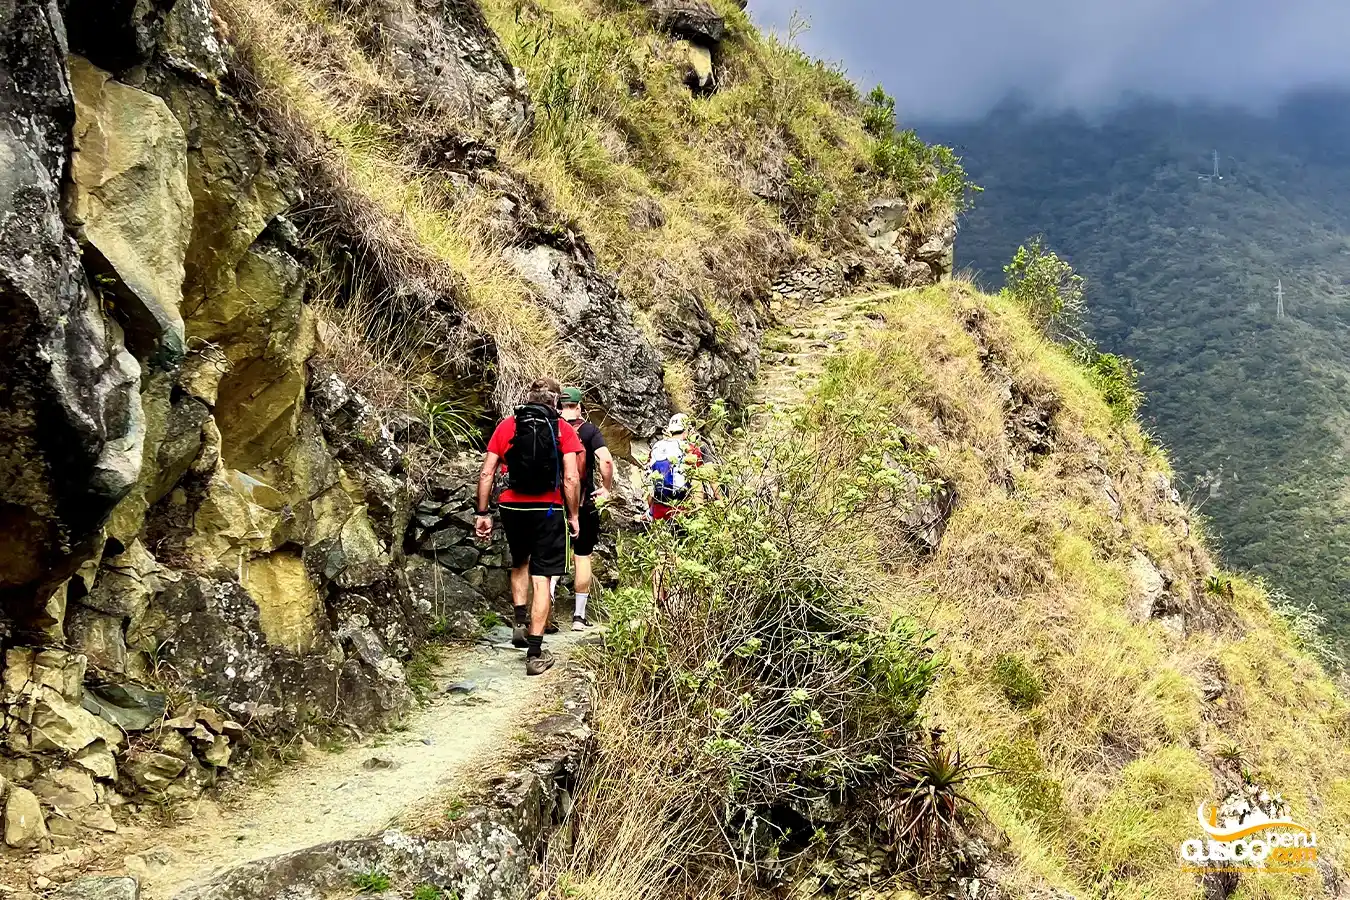 Inca Trail to Machu Picchu, part of the Qhapaq Ñan.
Source: CuscoPeru.Com